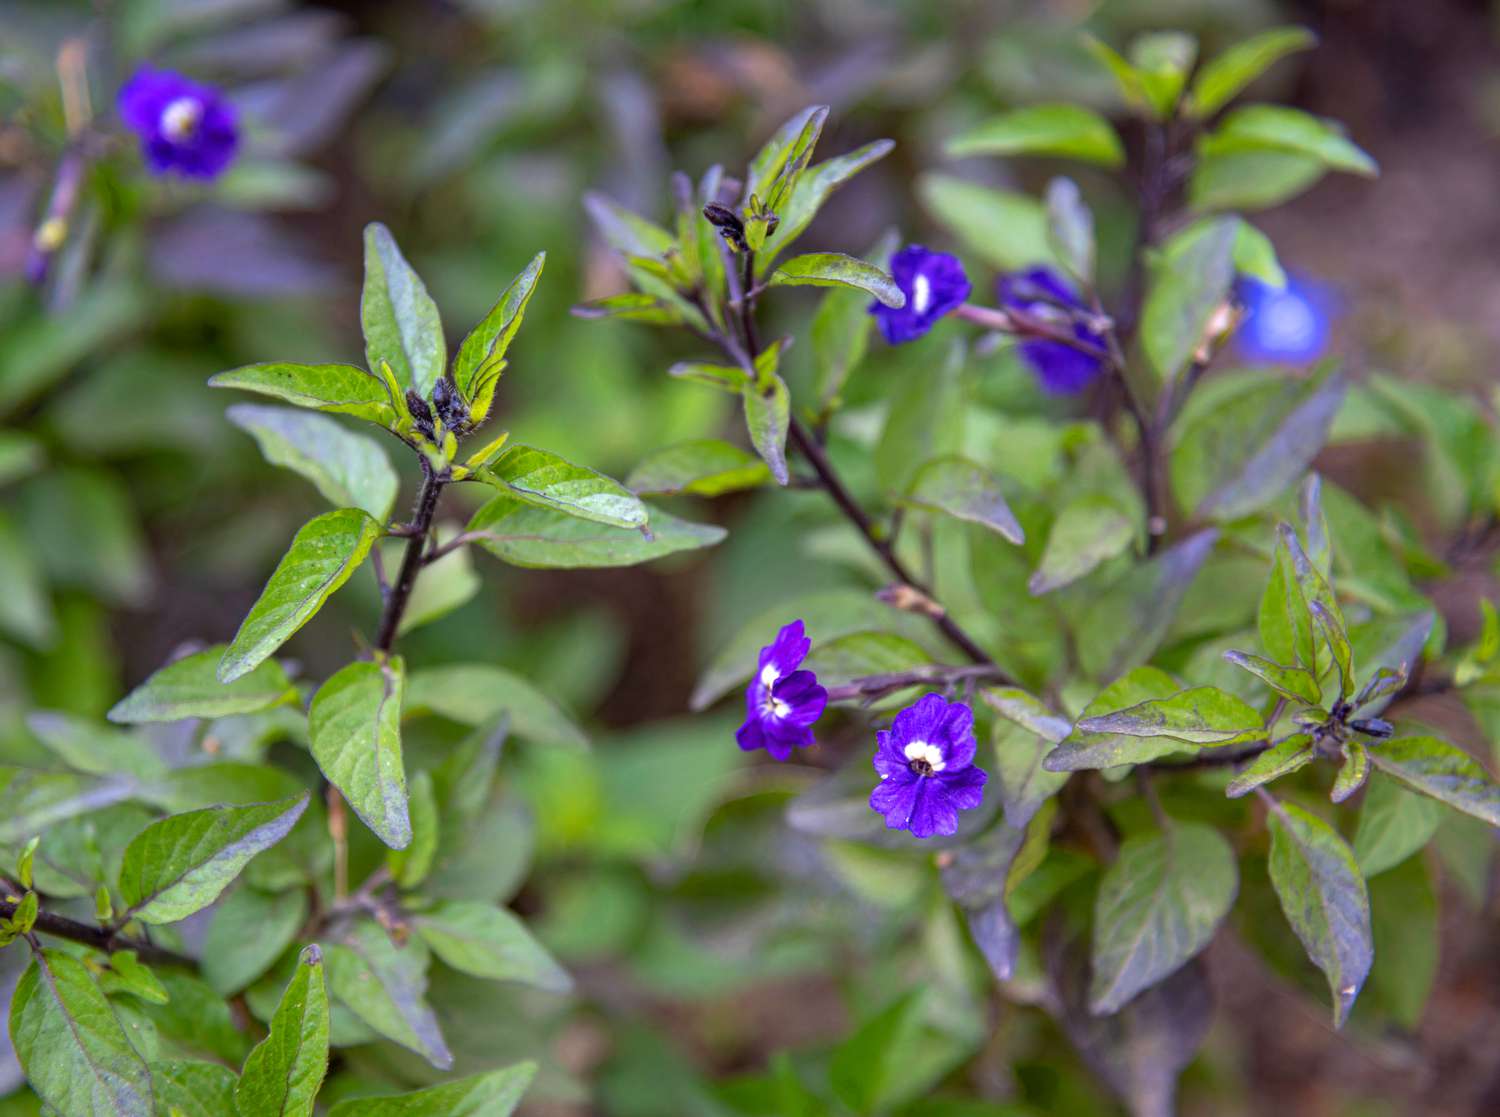 Browallia-Pflanze mit kleinen tiefvioletten Blüten auf dunklen Stängeln mit hellgrünen Blättern in Nahaufnahme